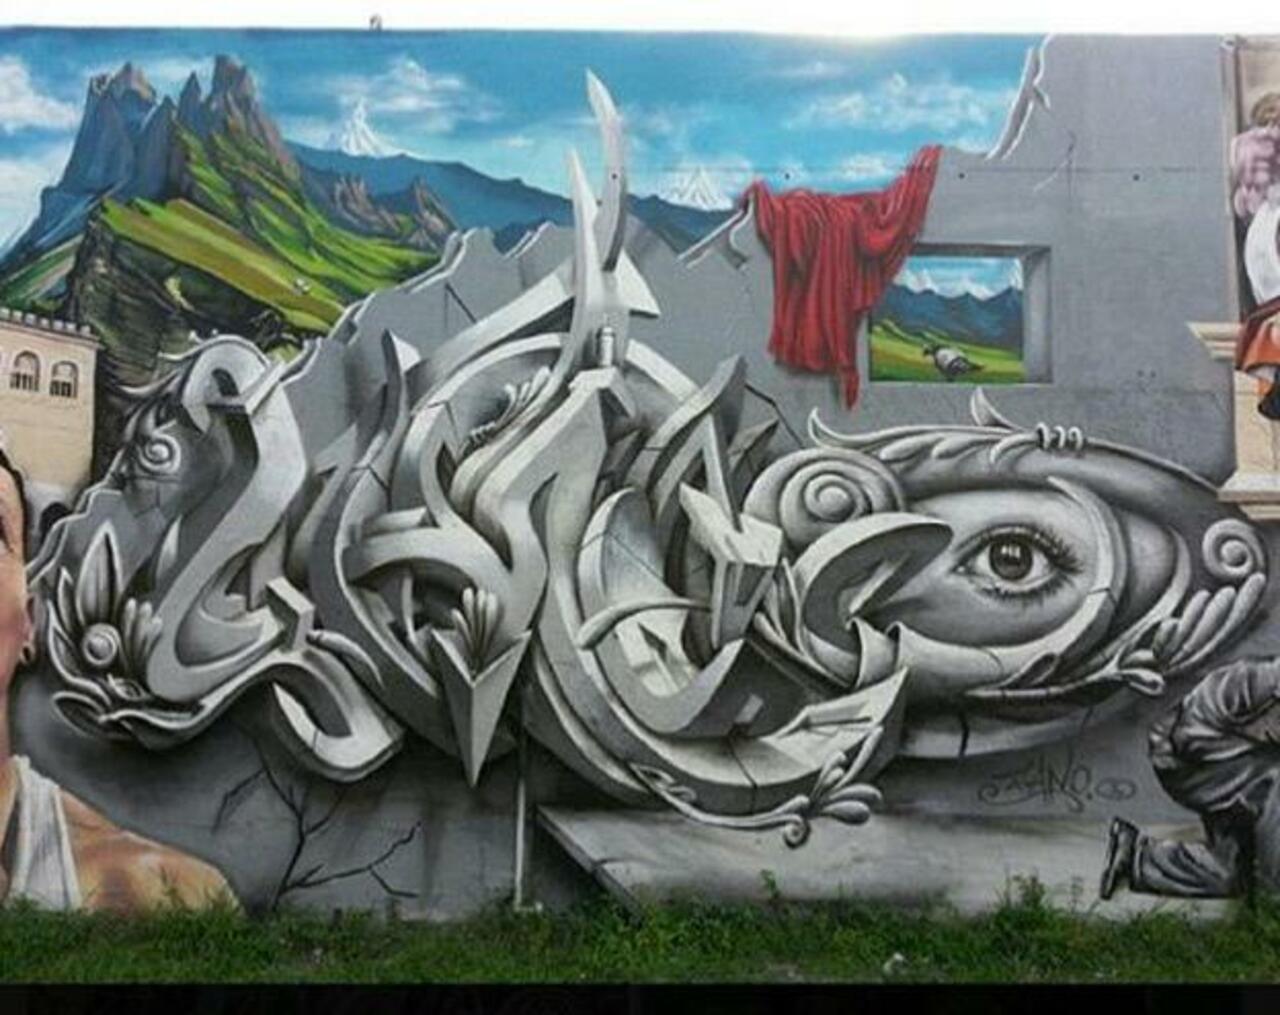 Street Art by Smog One

#art #mural #graffiti #streetart http://t.co/YpEd6nZG1x